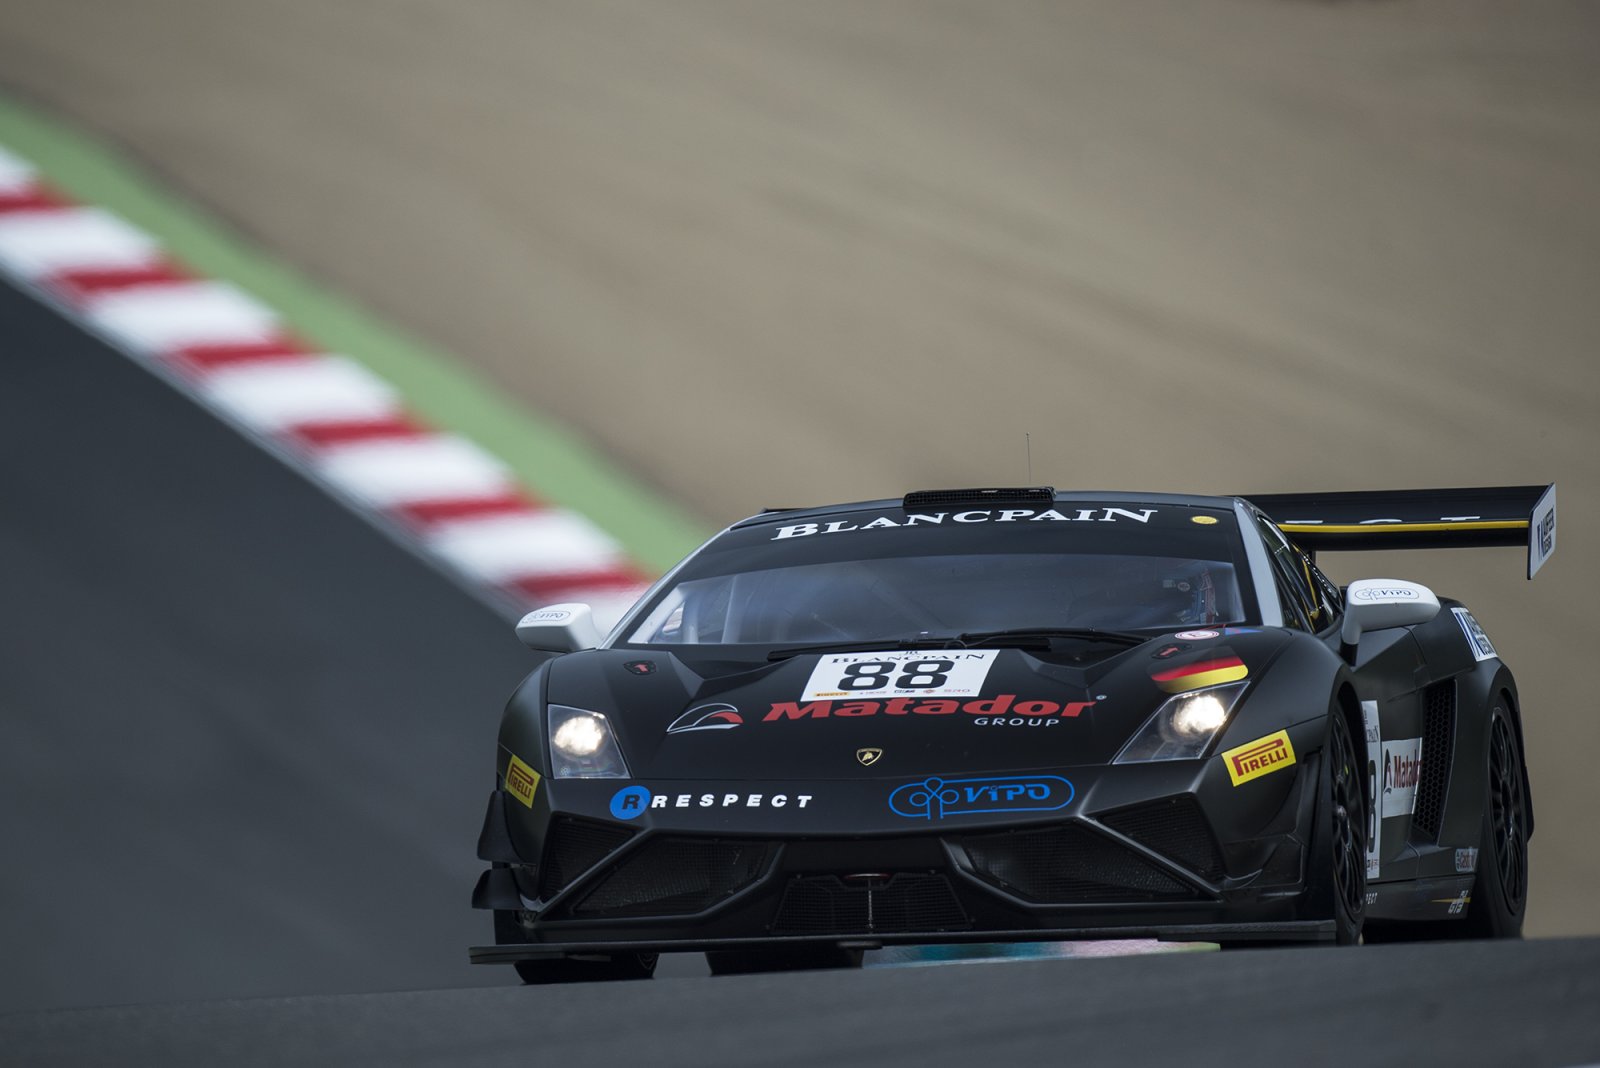 Reiter Engineering Lamborghini quickest in first free practice